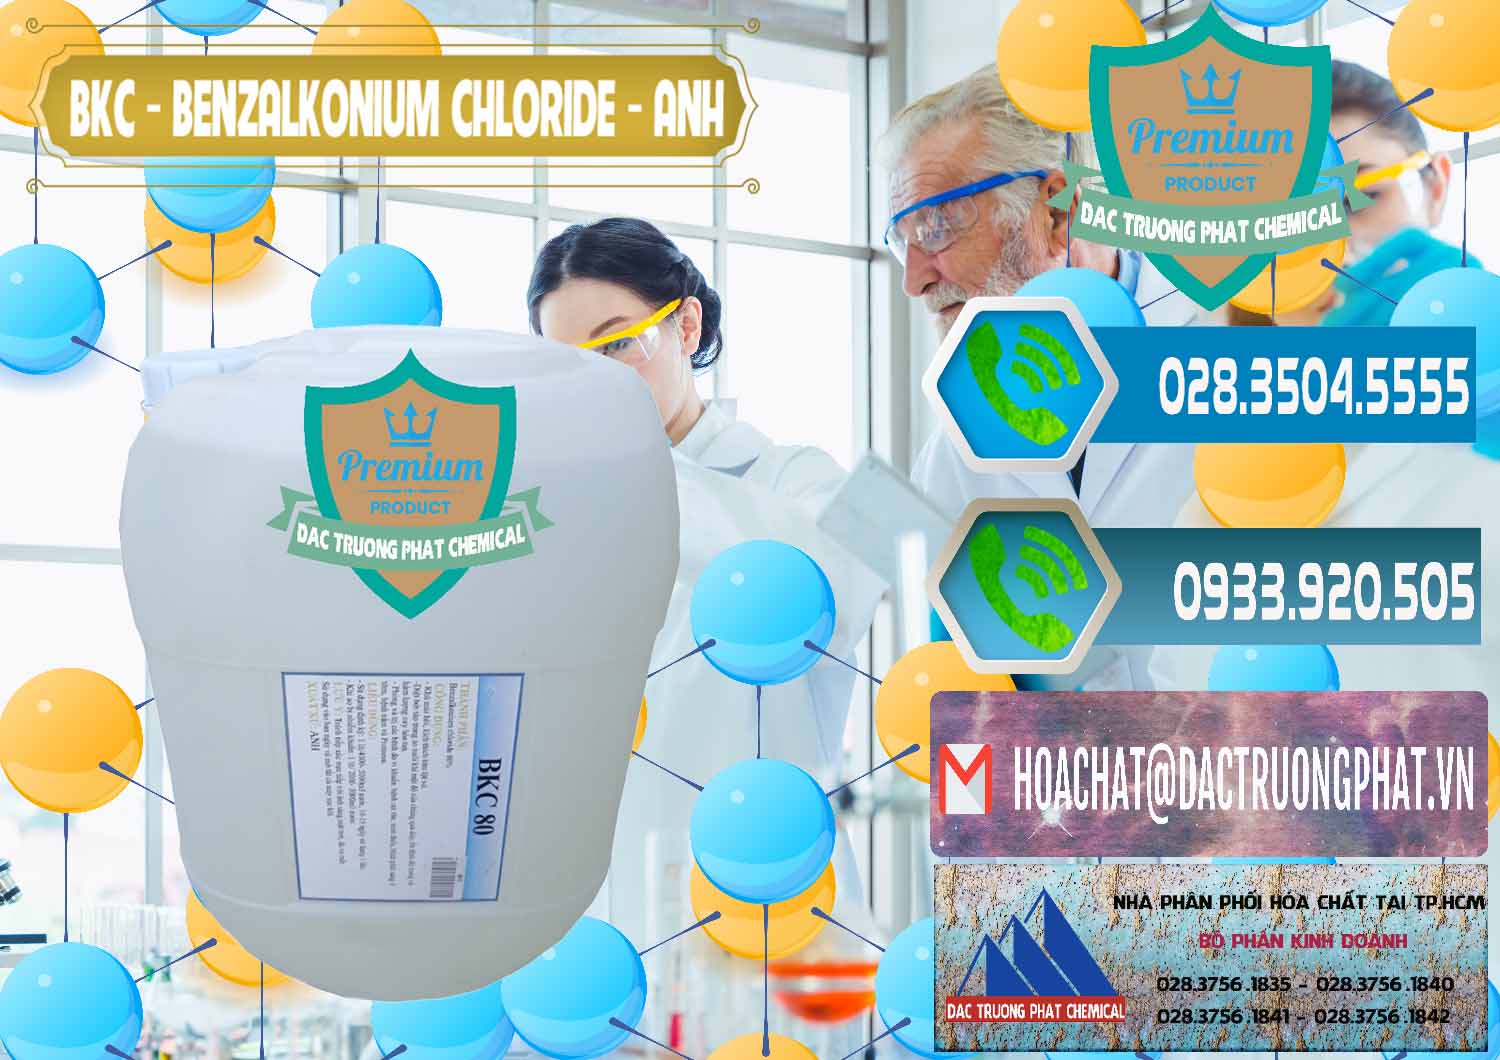 Cty cung ứng & bán BKC - Benzalkonium Chloride Anh Quốc Uk Kingdoms - 0415 - Công ty bán ( cung cấp ) hóa chất tại TP.HCM - congtyhoachat.net